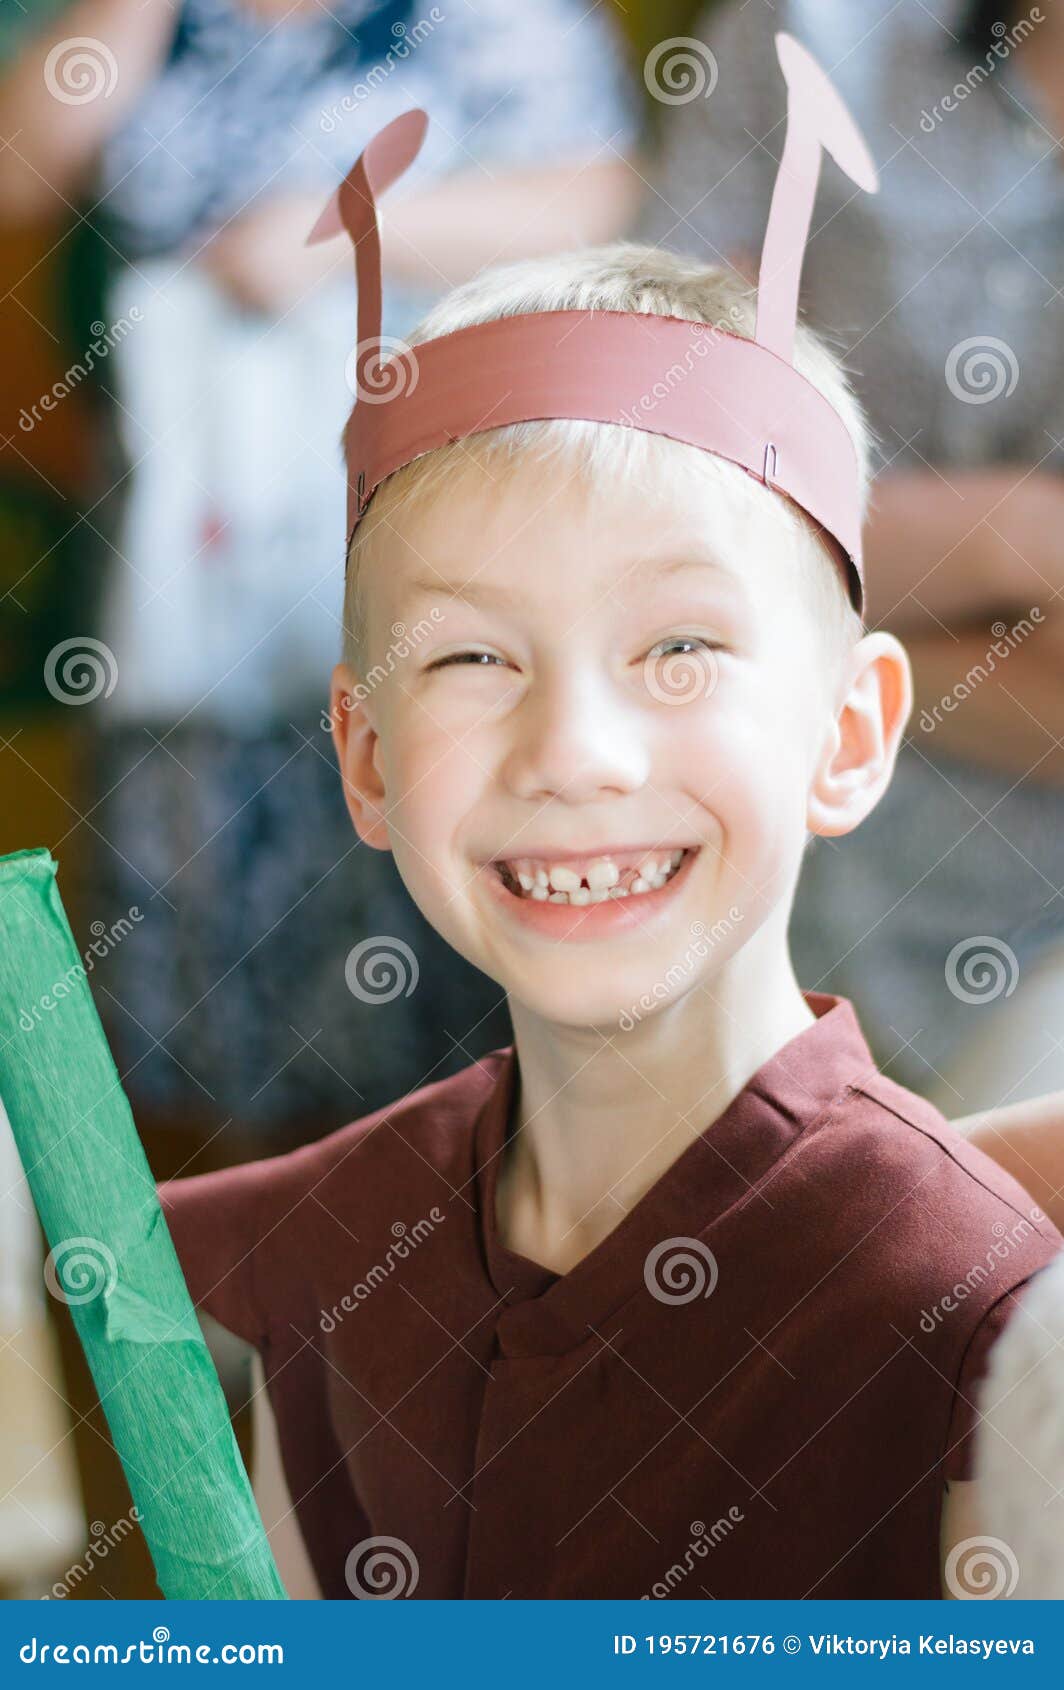 Un Niño Vestido De Hormiga En Una Actuación Teatral En La Escuela. Retrato De Niño Foto de archivo - Imagen alegre, sombrero: 195721676